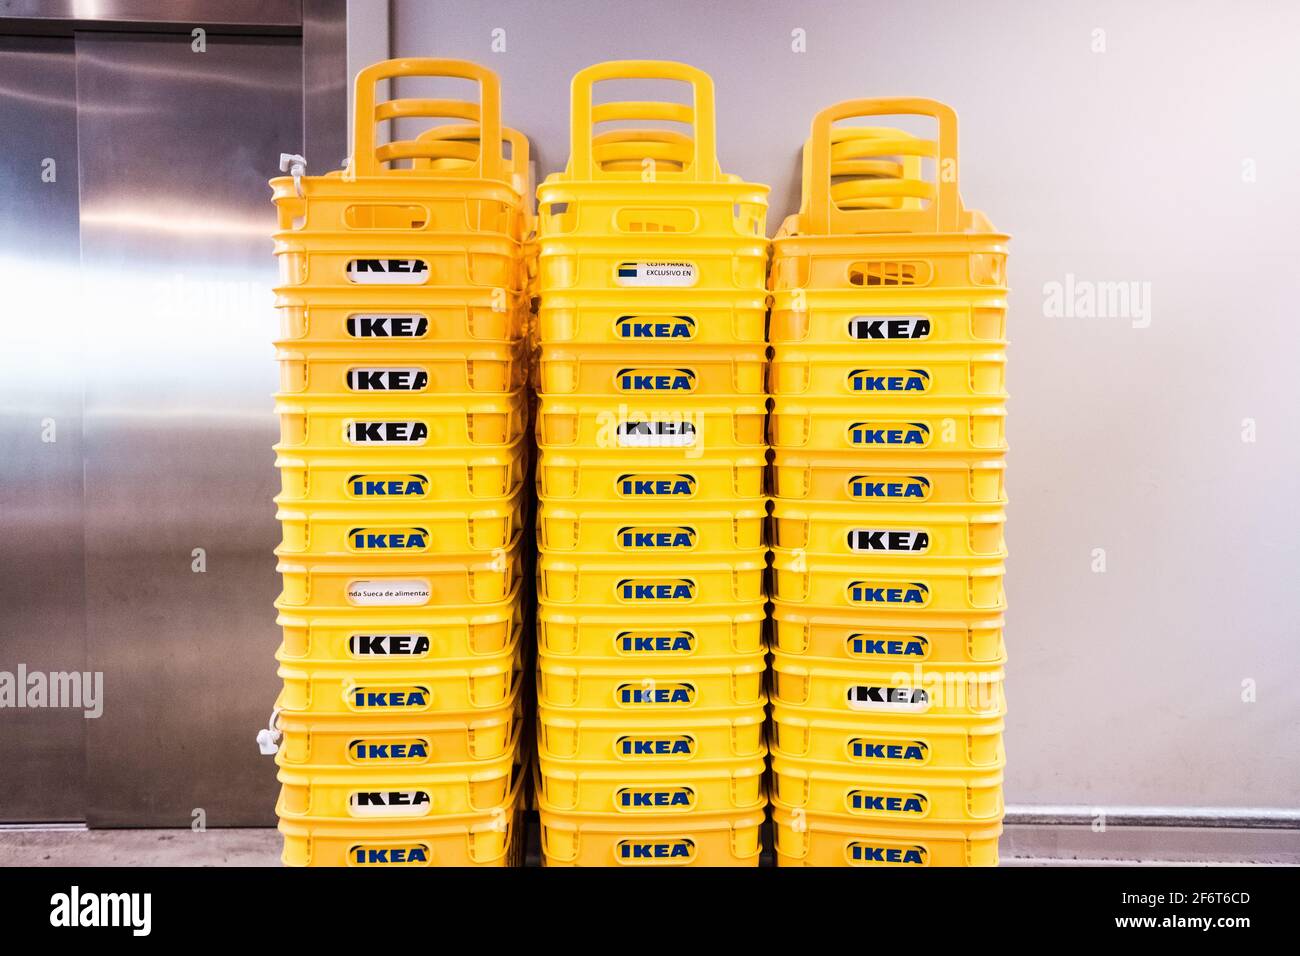 Valencia, Spagna - 1 aprile 2021: Cestelli di plastica impilati dal negozio di mobili Ikea. Foto Stock